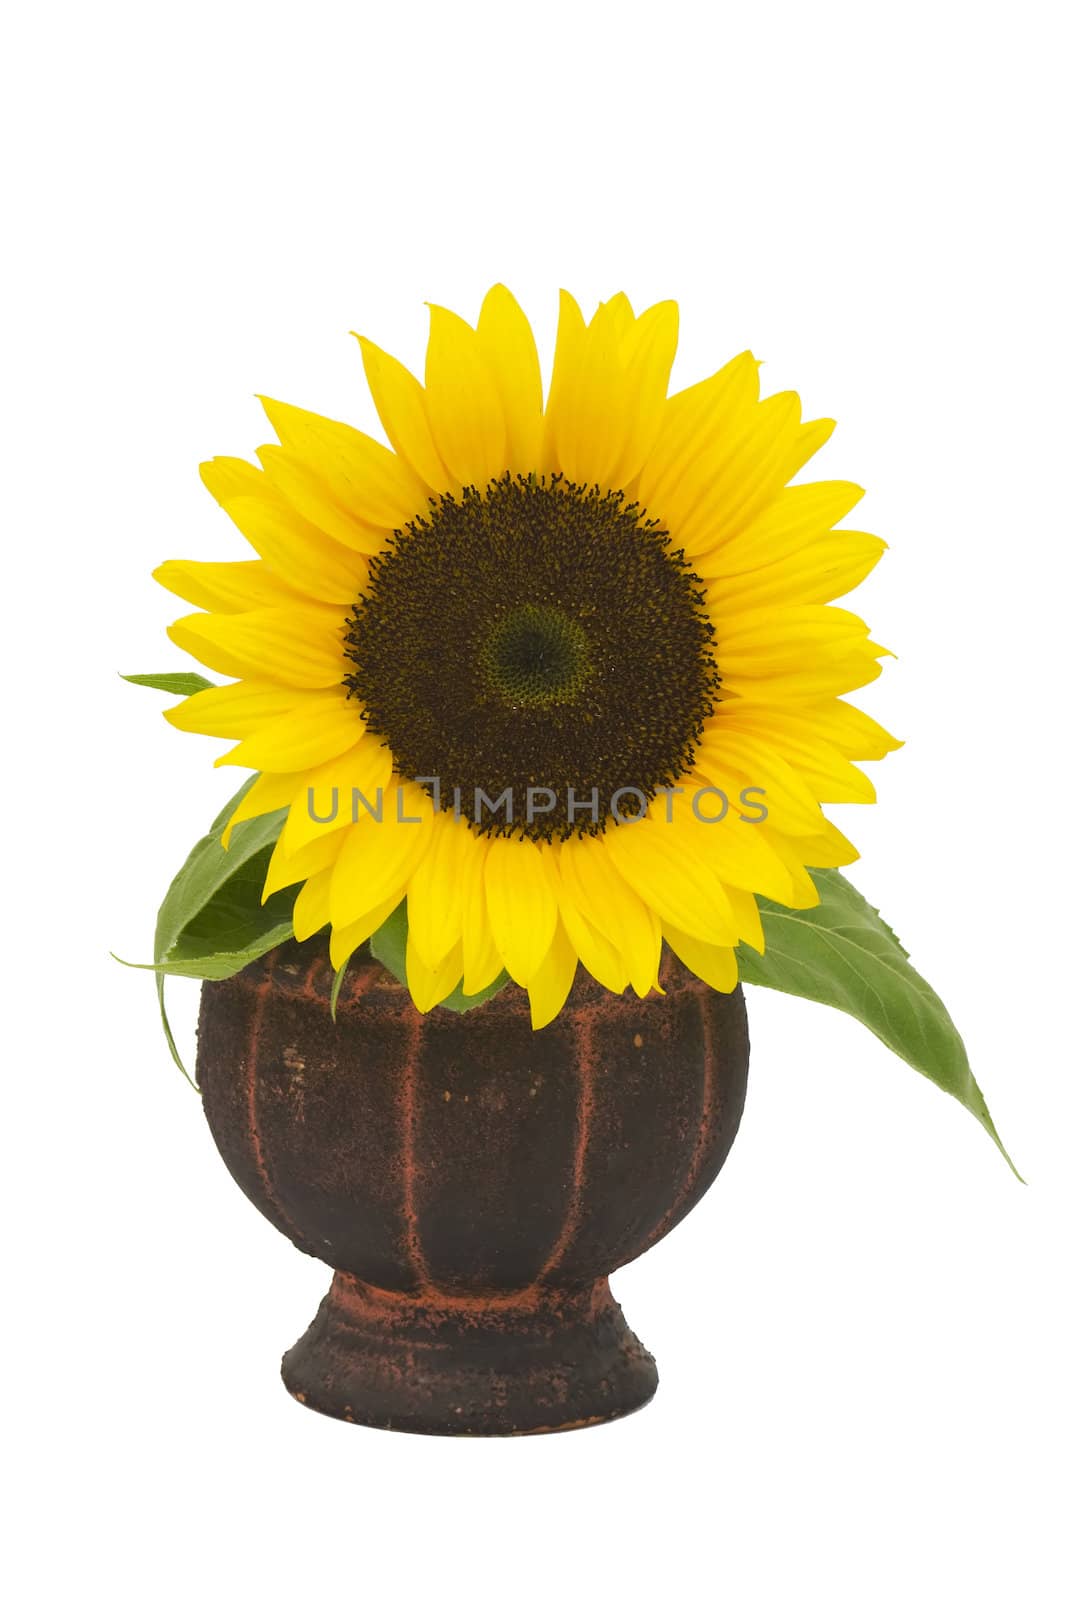 Beautiful sunflower in a vase (Helianthus)